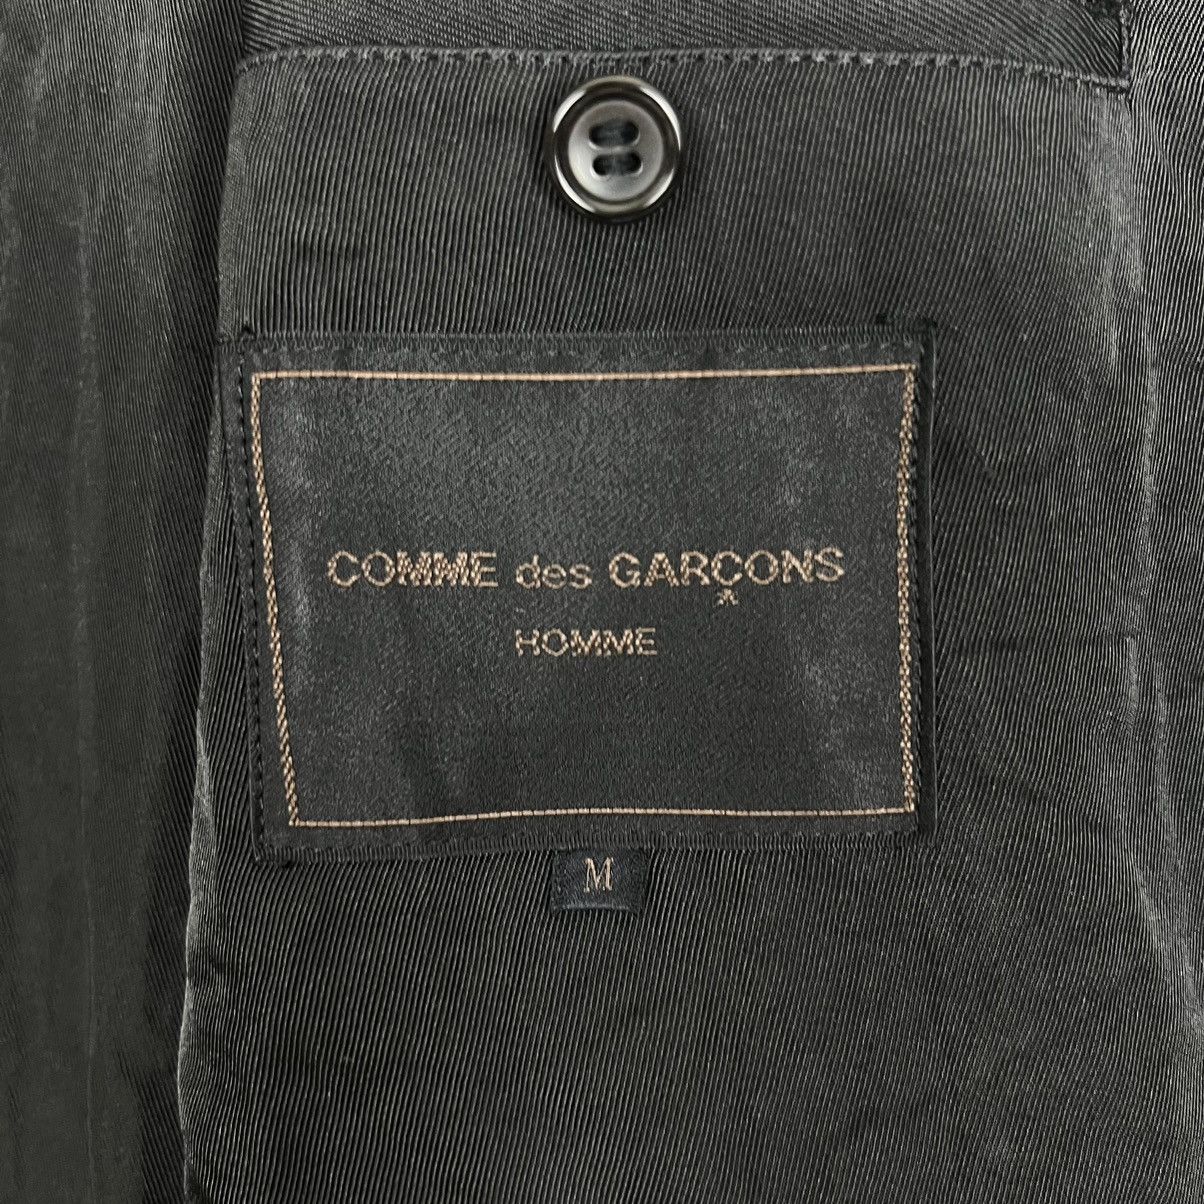 AW1993 CDG HoMMe Black Nylon Long Coat - 7